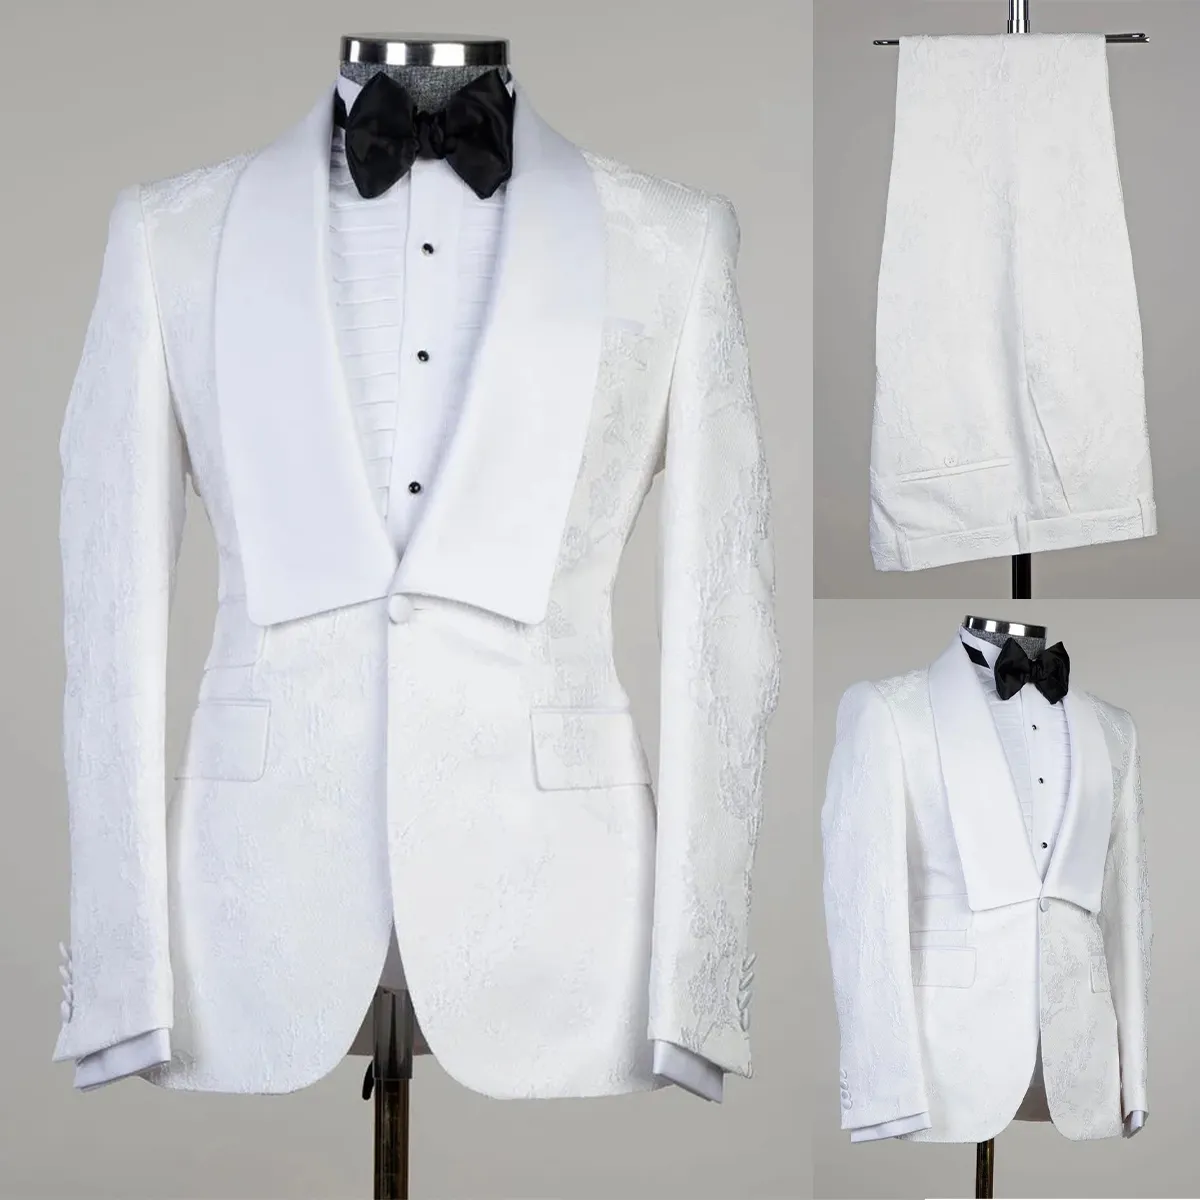 モダンな結婚式の男性スーツタキシードグルームウェアホワイトフォーマルスーツ印刷カスタムサイズショールラペルシングル胸2ピースブレザー+パンツ